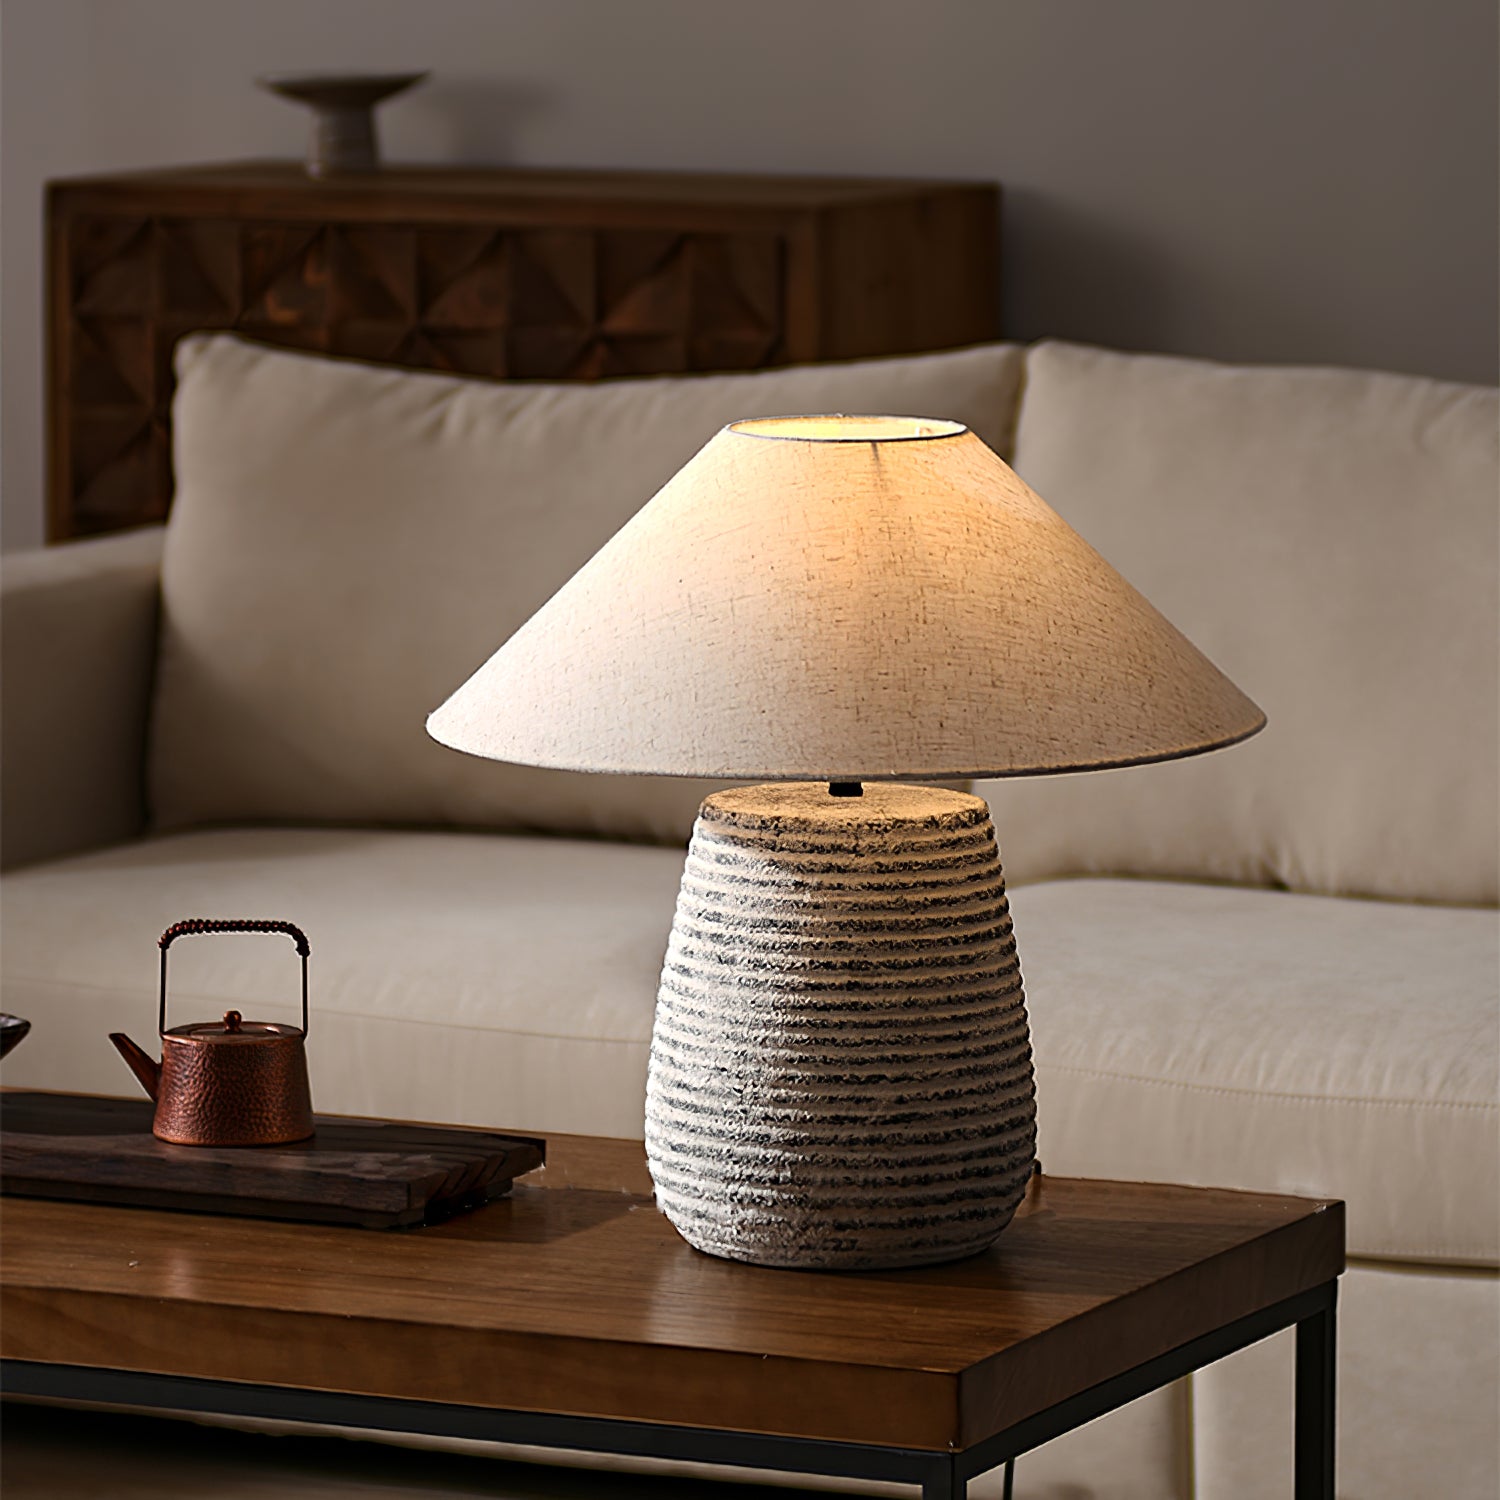 Koa Table Lamp